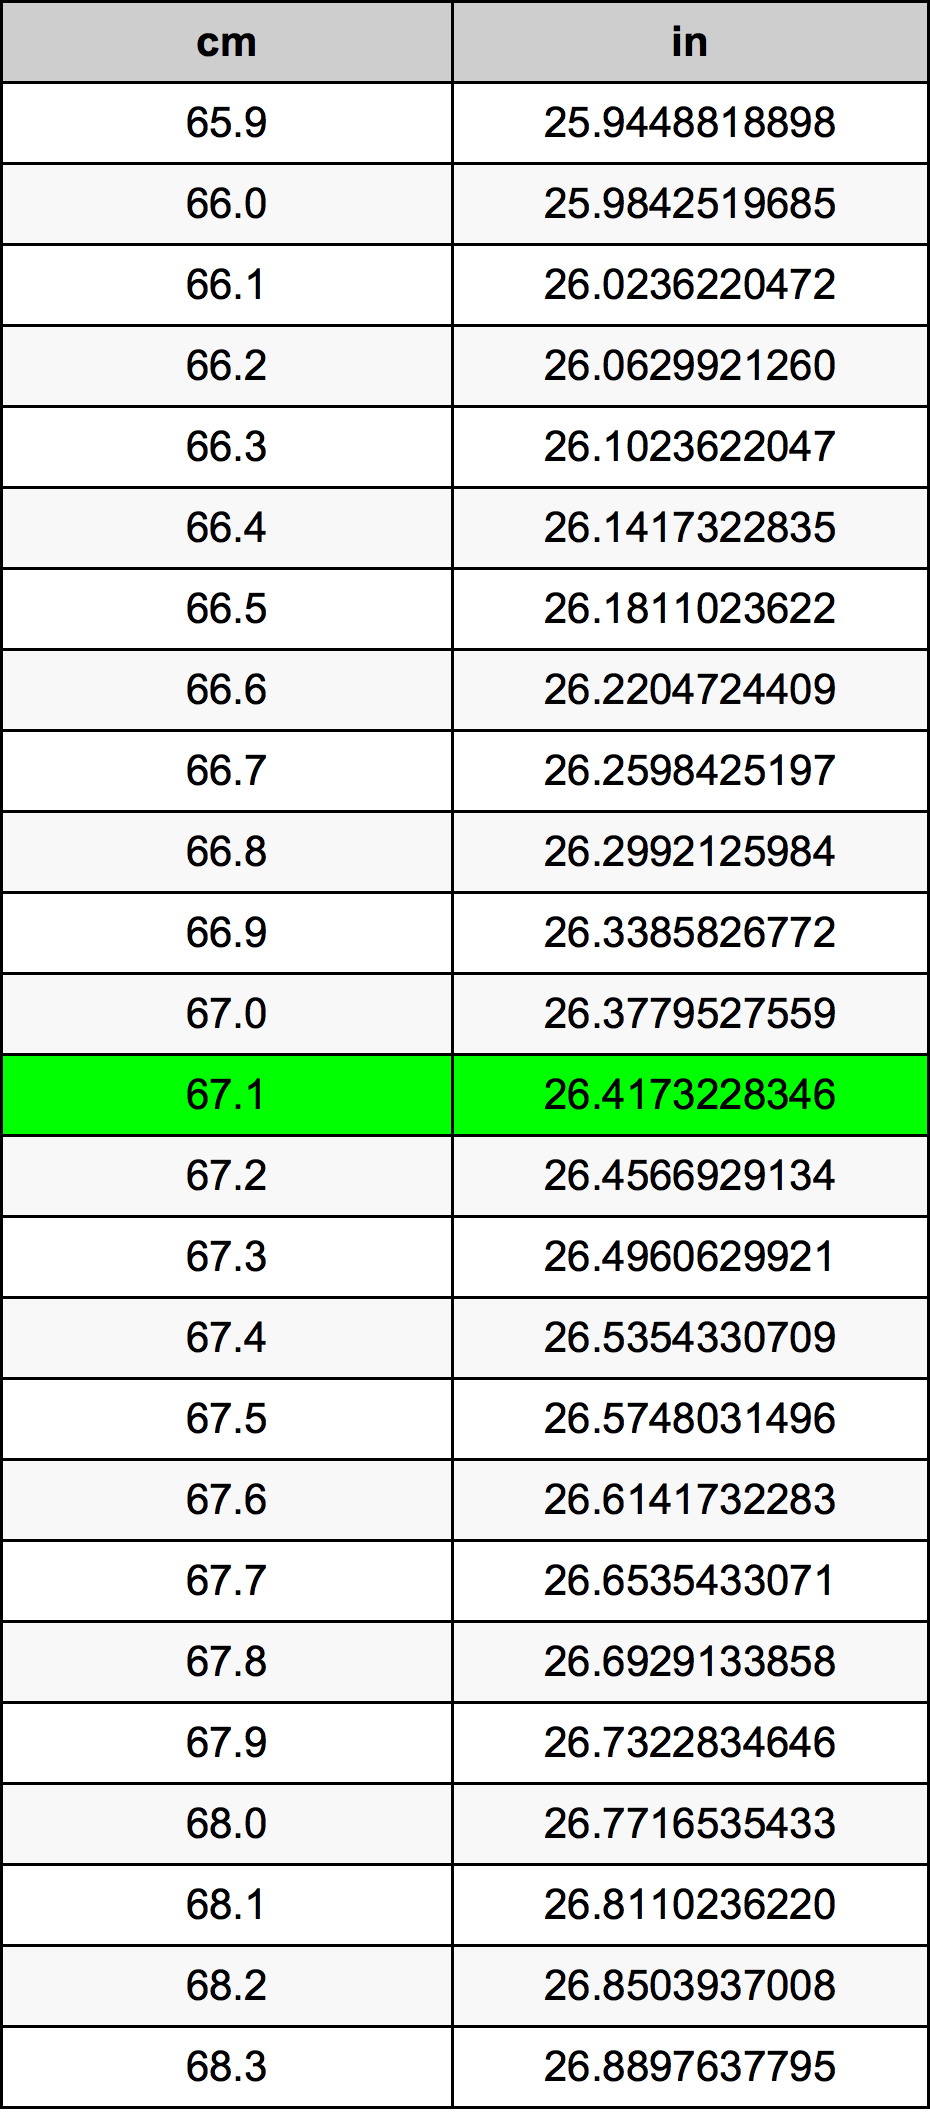 67.1 Centiméter átszámítási táblázat